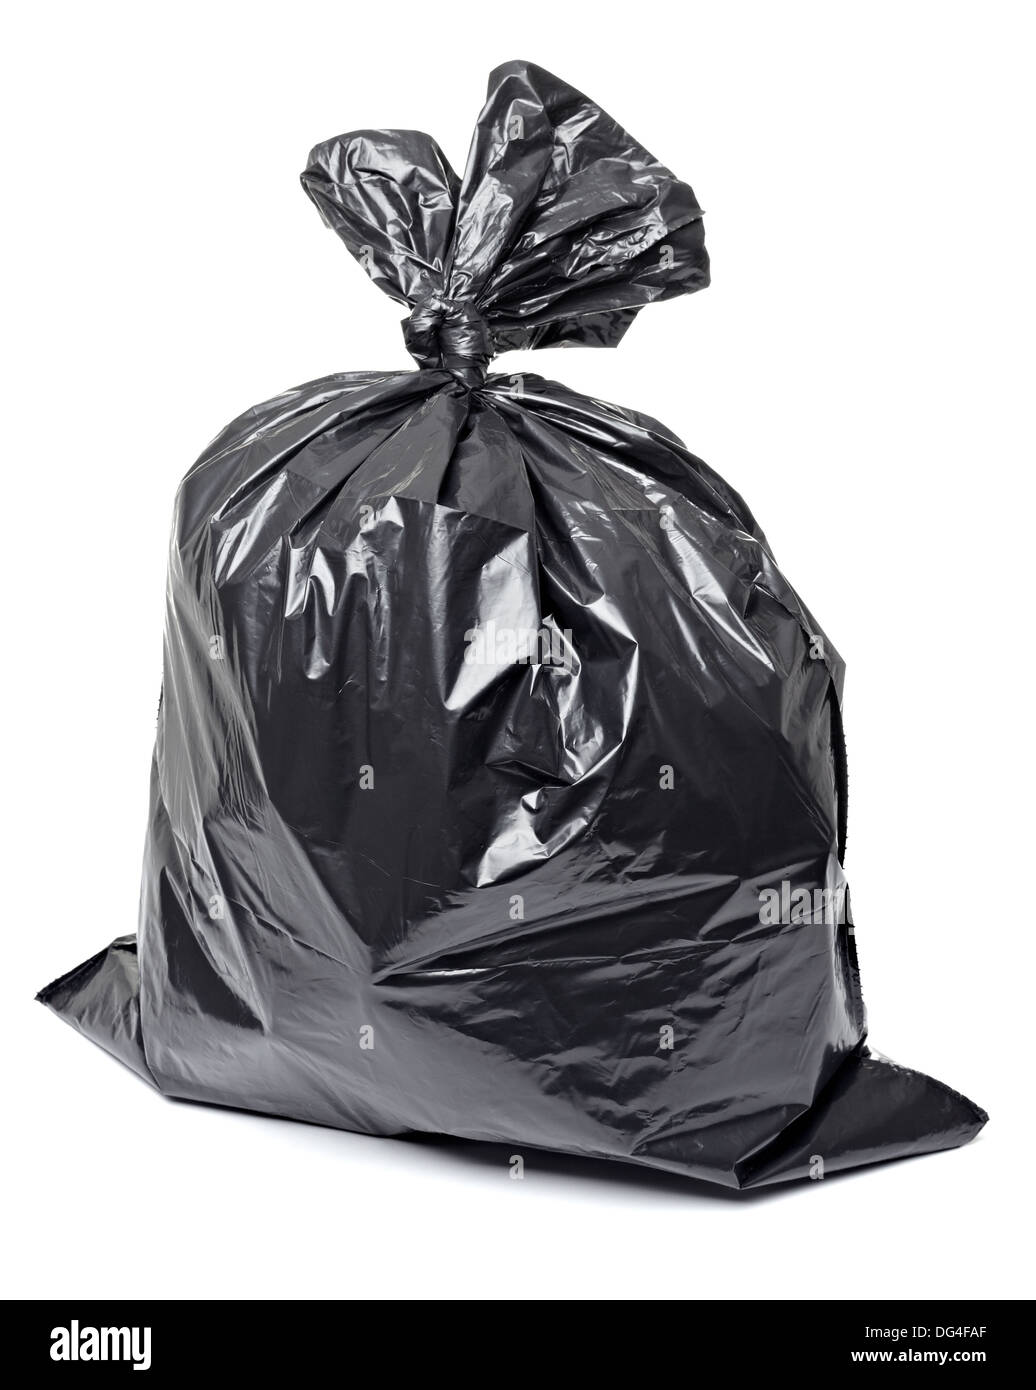 Black Garbage Bag 23X17X48